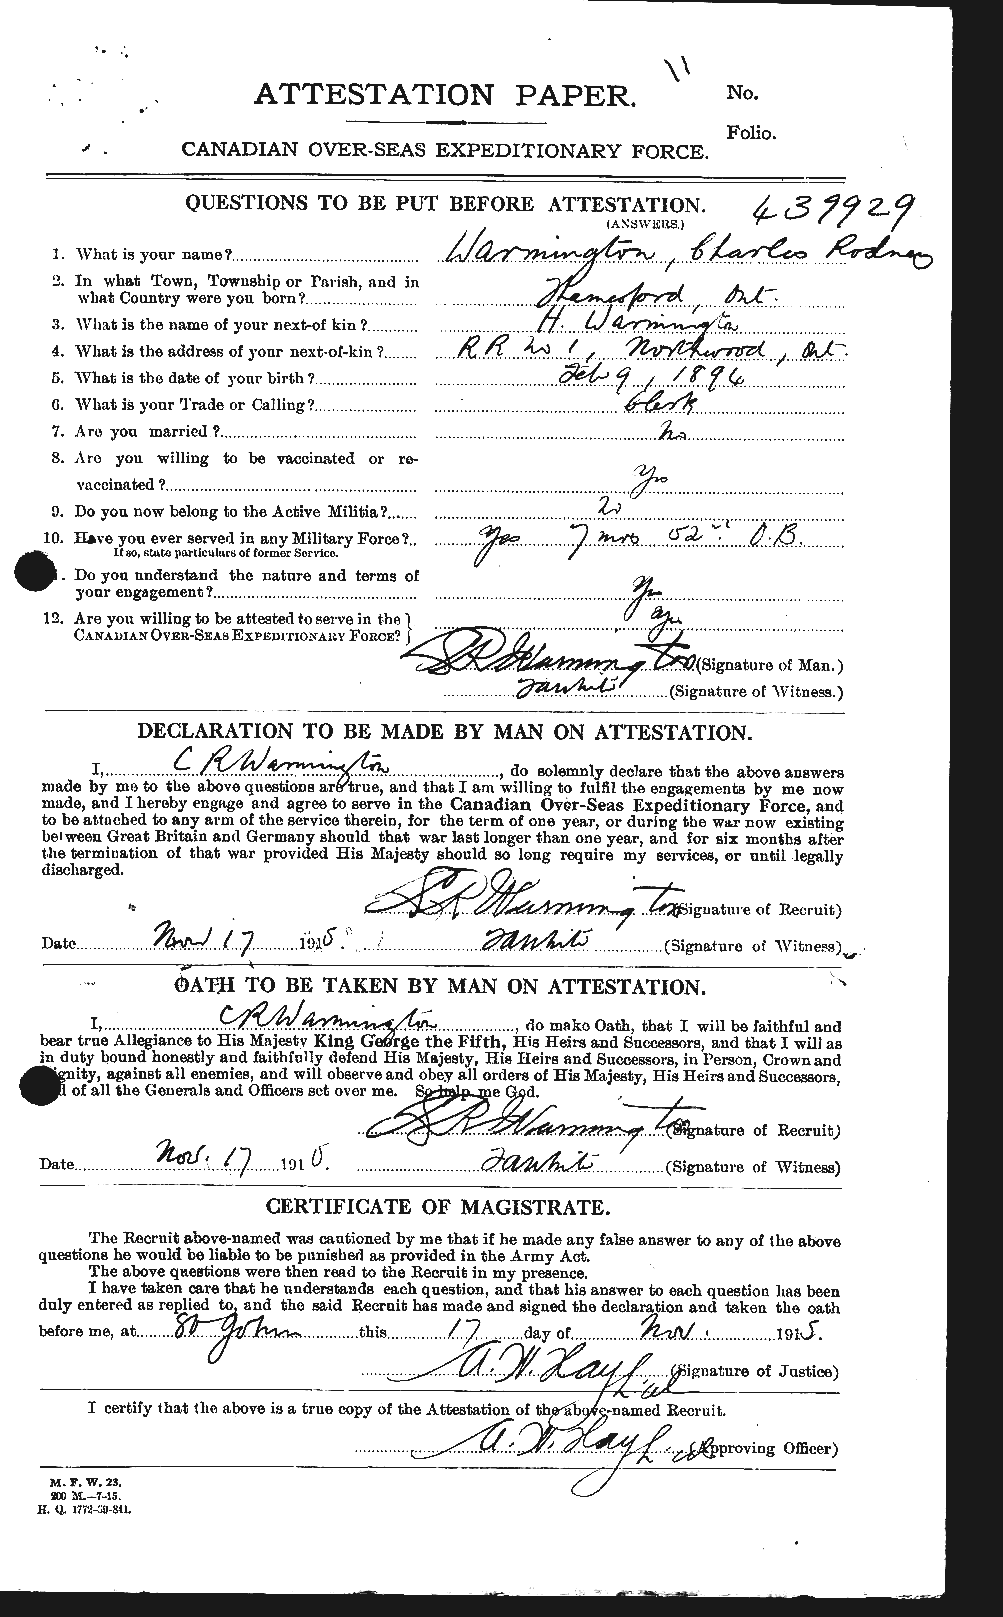 Dossiers du Personnel de la Première Guerre mondiale - CEC 657238a